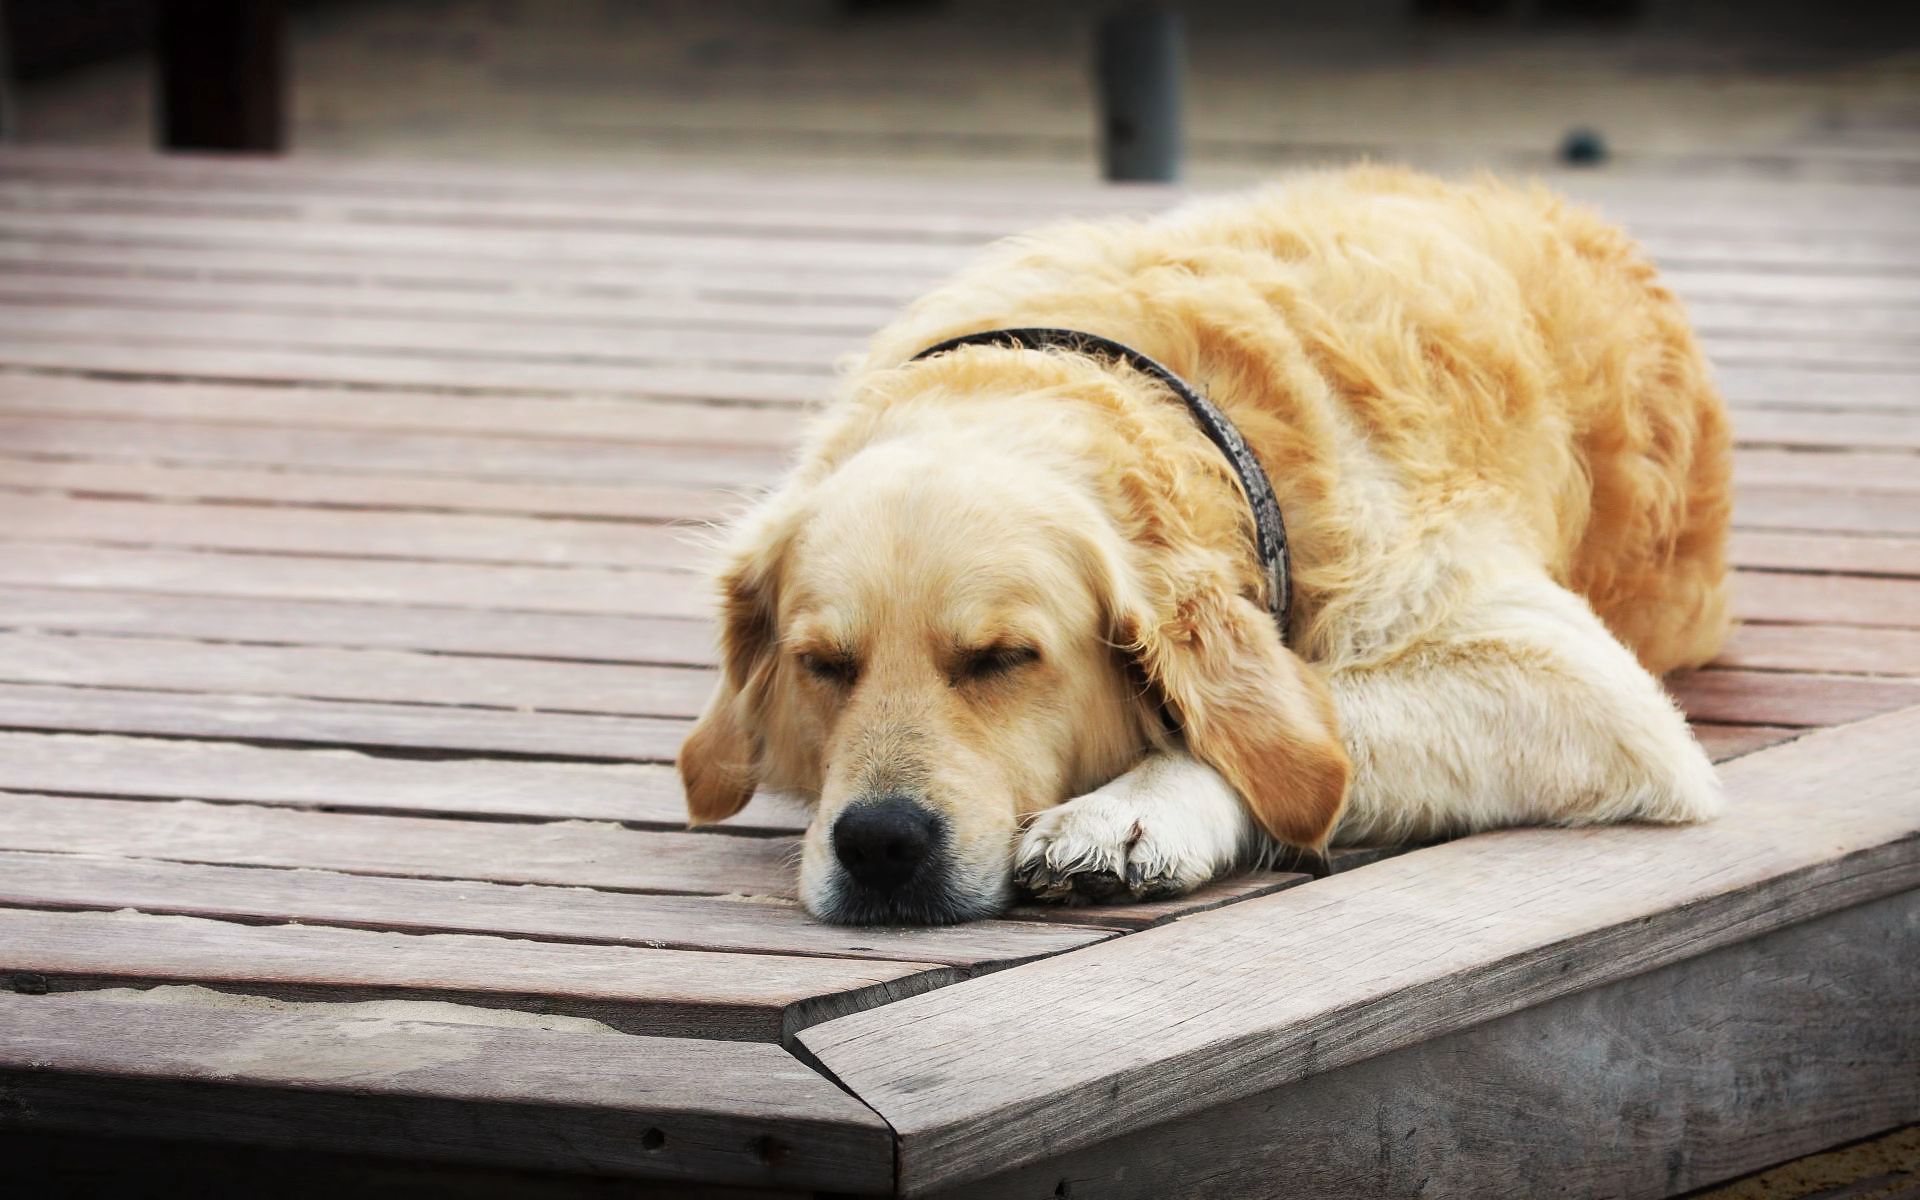 animals, dog, relaxation, rest, sleep, dream, wooden floor